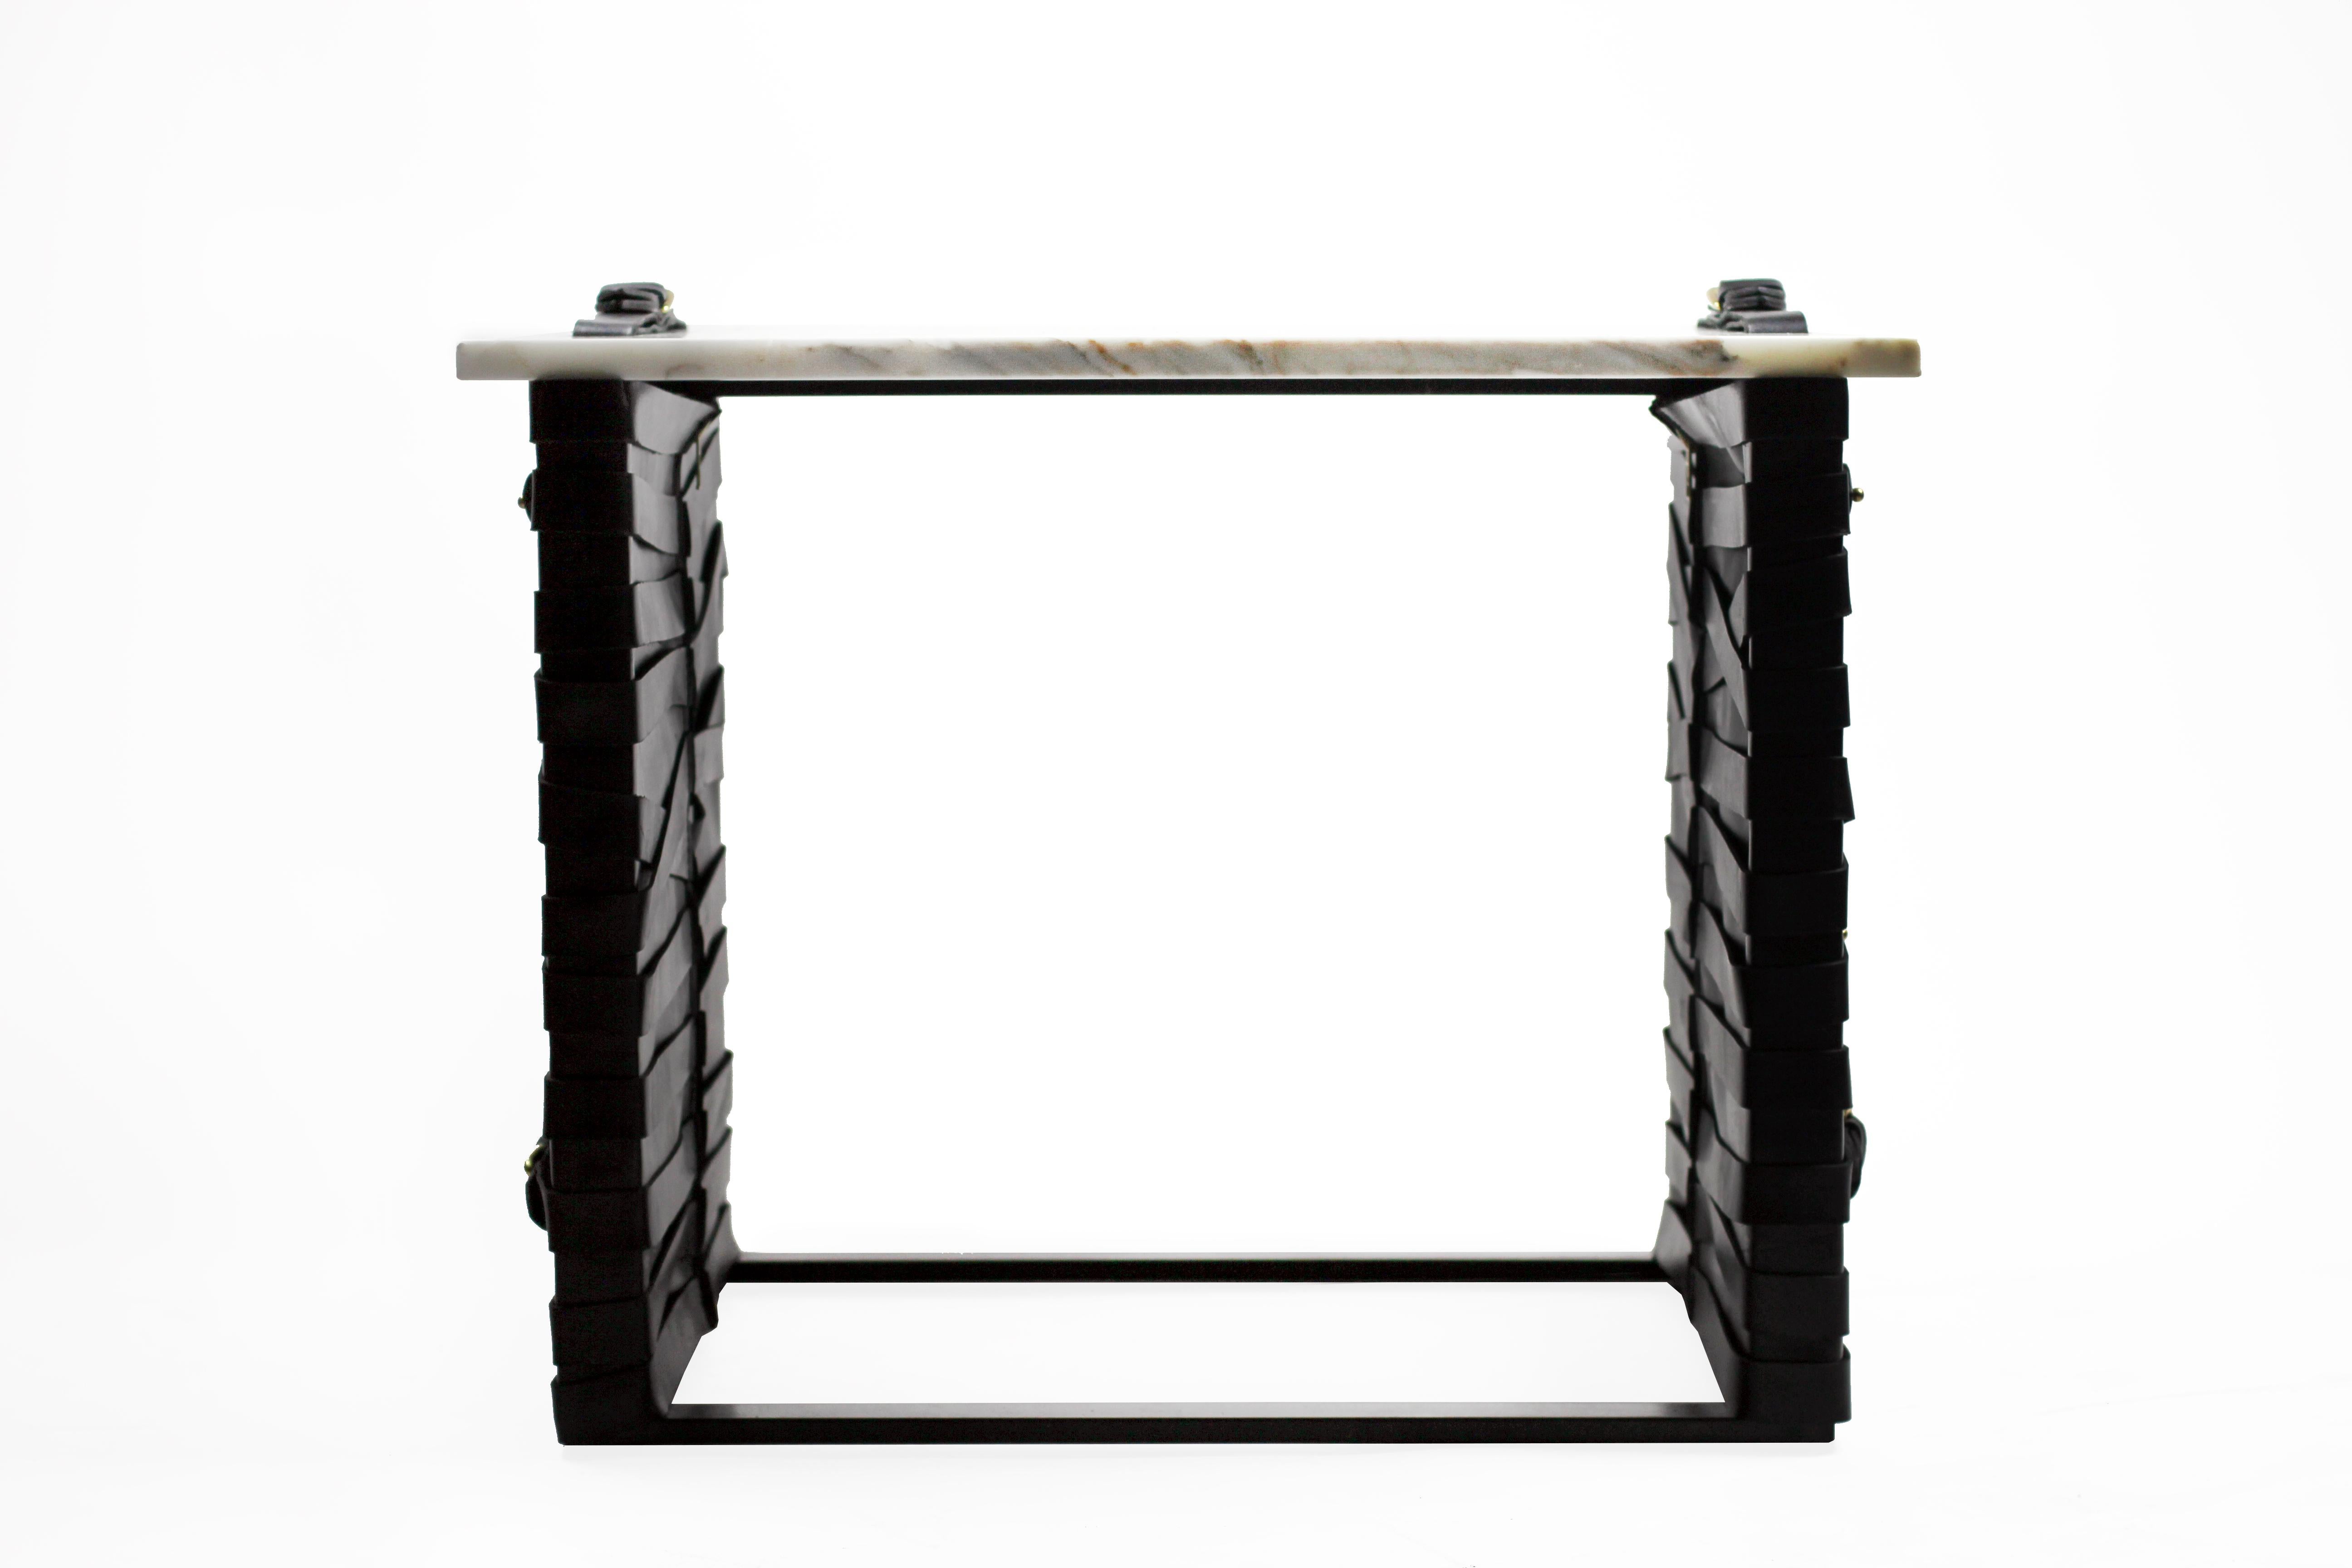 La table d'appoint (wh)ORE HAüS STUDIOS restraint est faite d'acier noirci, de marbre, d'accents en laiton et de panneaux en cuir. Cette table est fabriquée sur commande et peut donc être personnalisée. Tel qu'illustré, acier noirci, marbre or